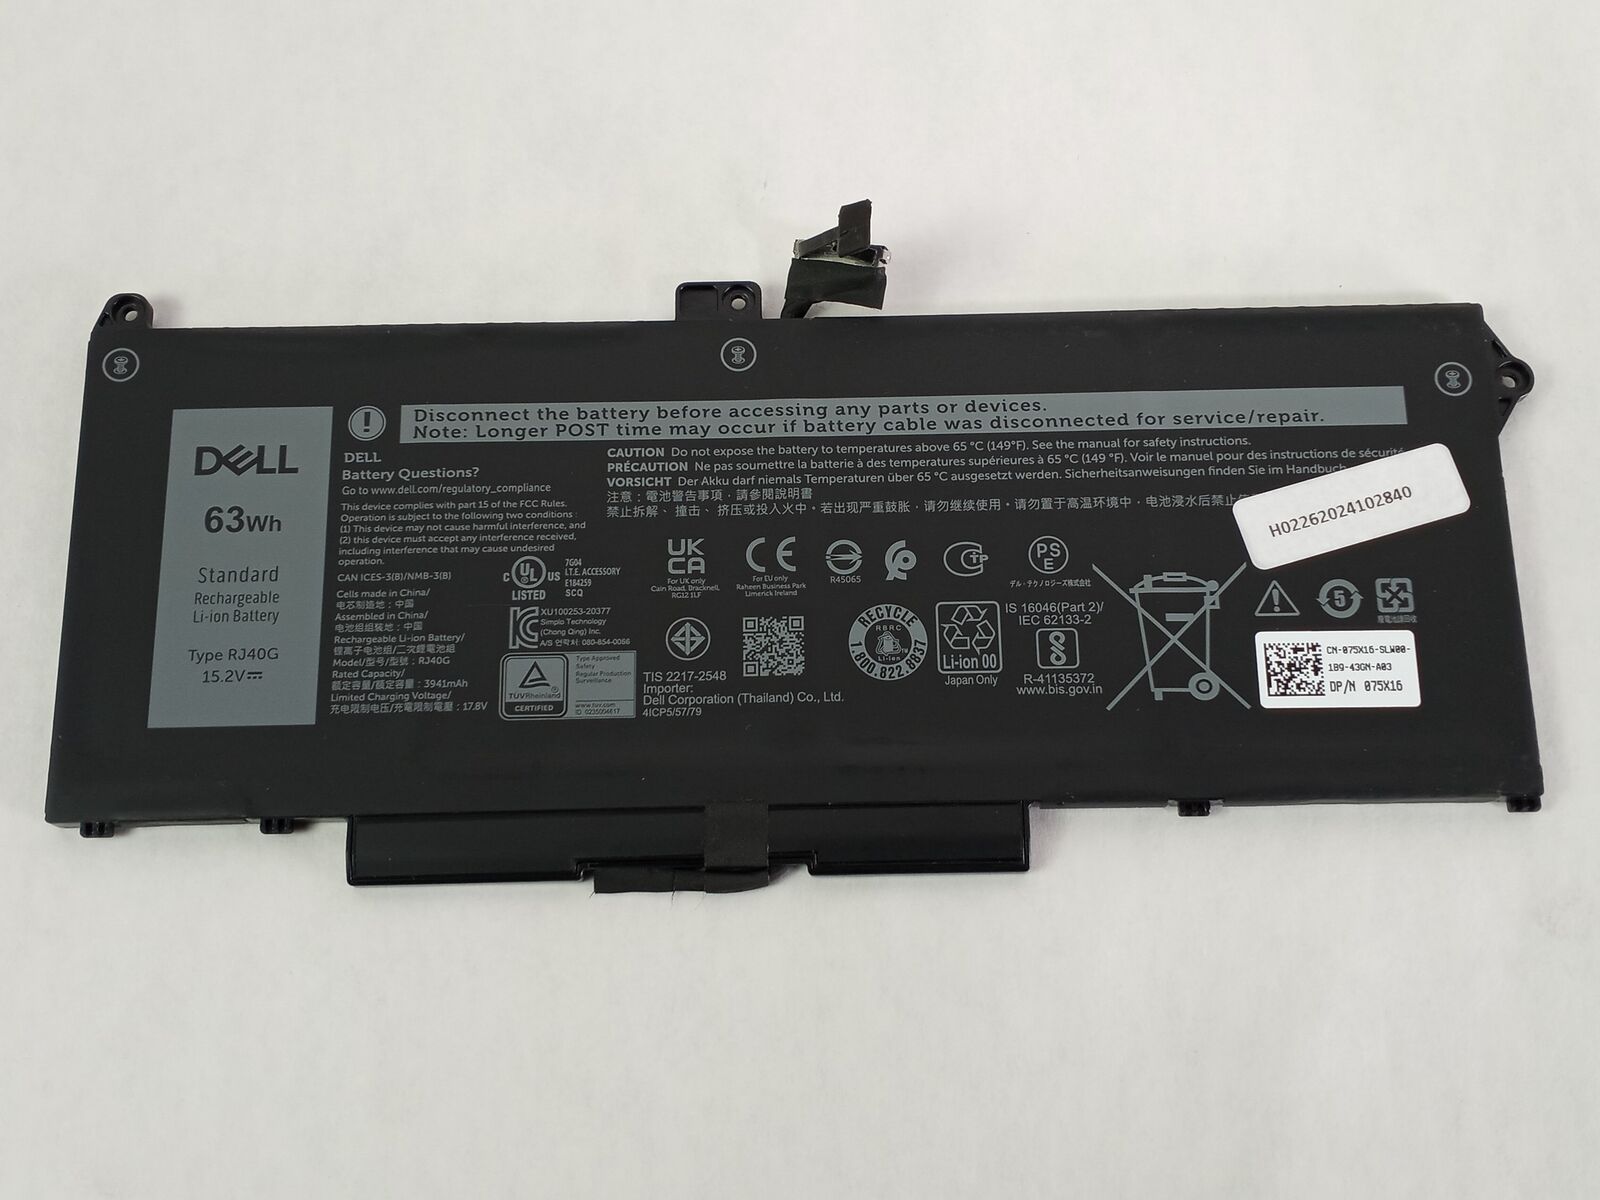 Lot of 10 Dell RJ40G 3941mAh 4 CellLaptop Battery for Latitude 5520